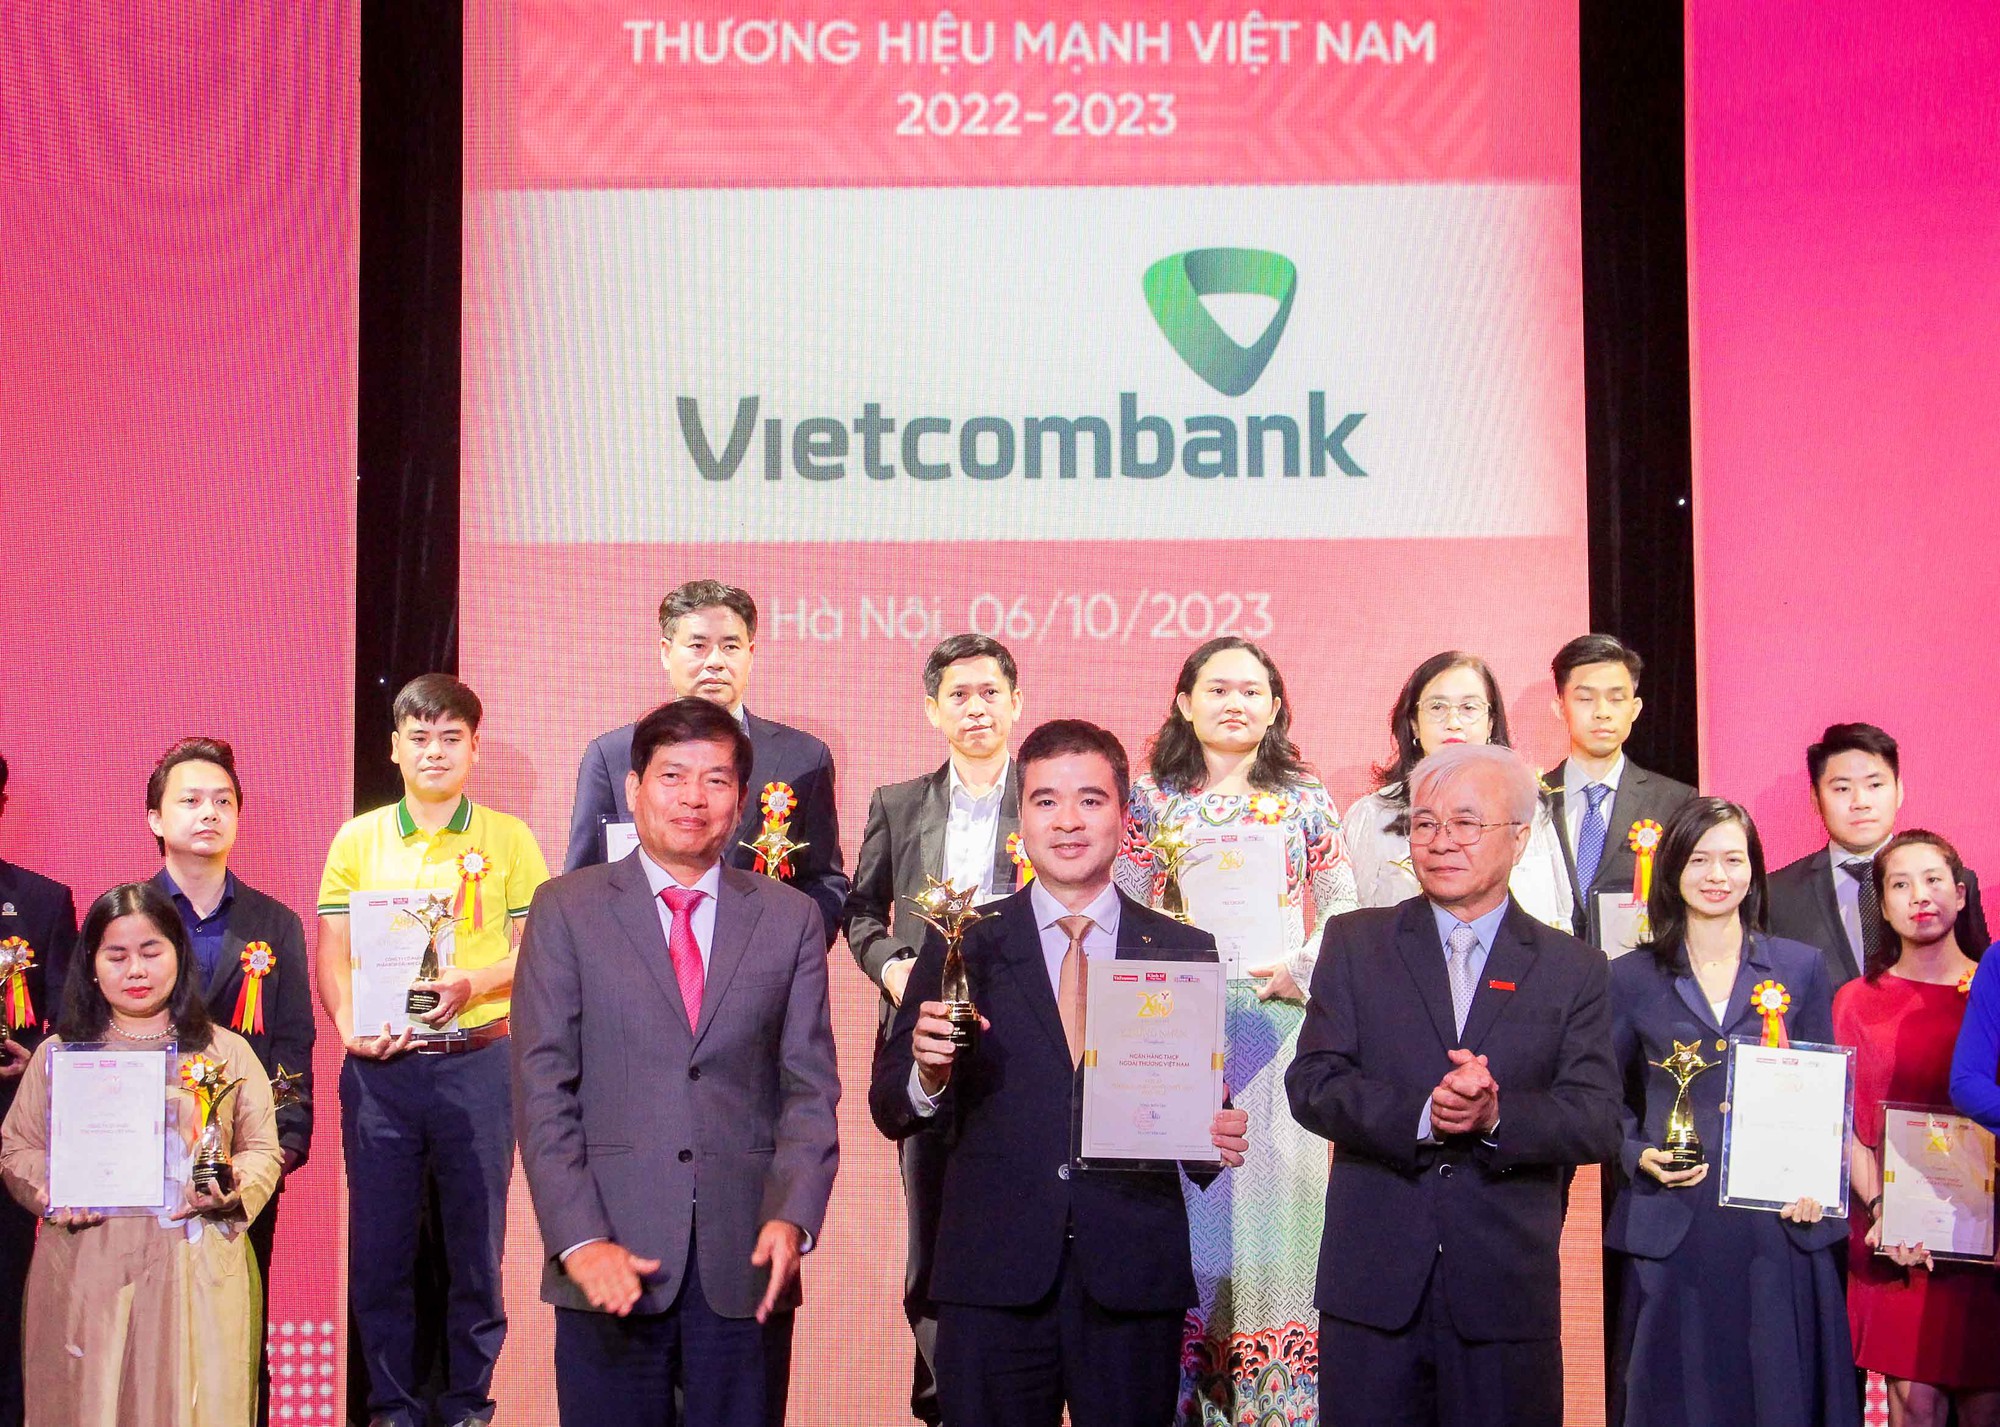 Đại diện Vietcombank (hàng đầu, đứng giữa) nhận giải thưởng Thương hiệu mạnh Việt Nam